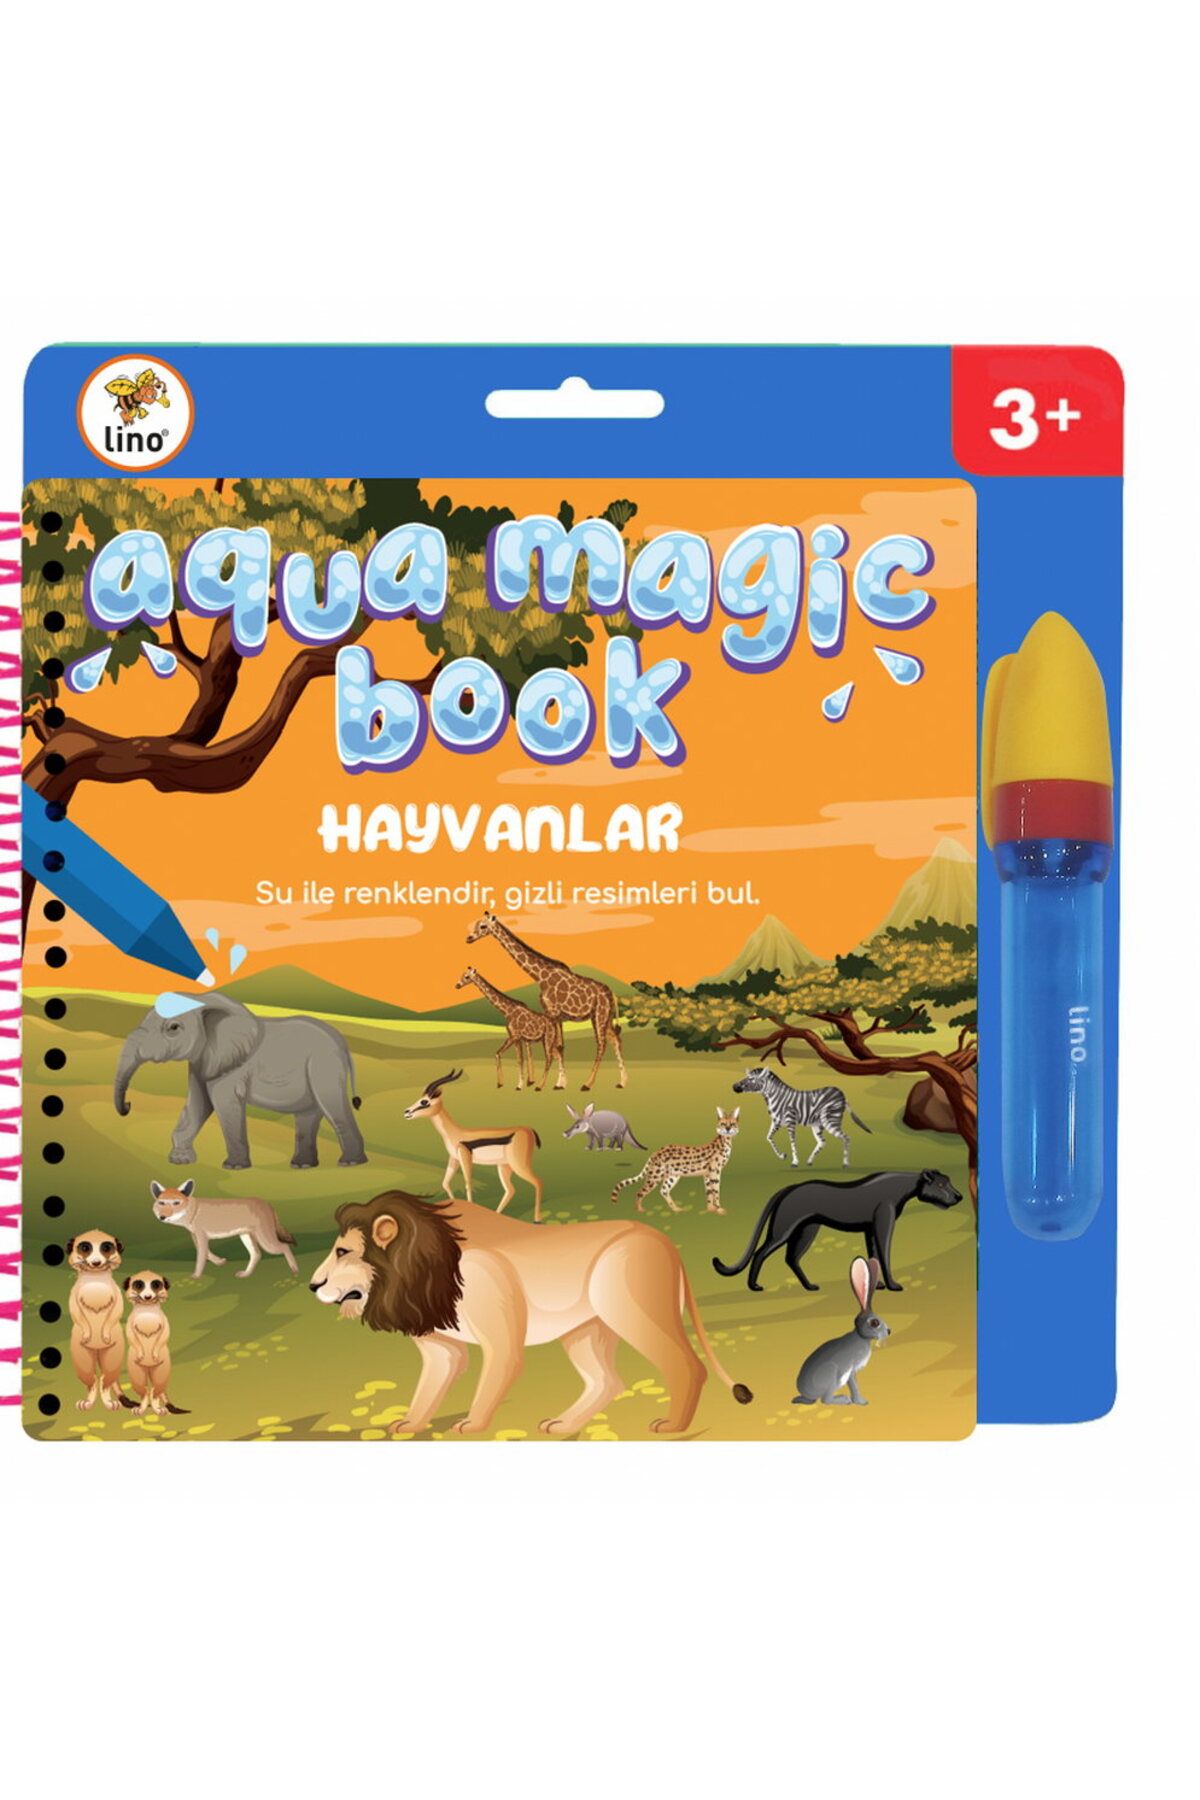 Lino Aqua Magic Book Hayvanlar (SİHİRLİ BOYAMA KİTABI) Tfl-1008